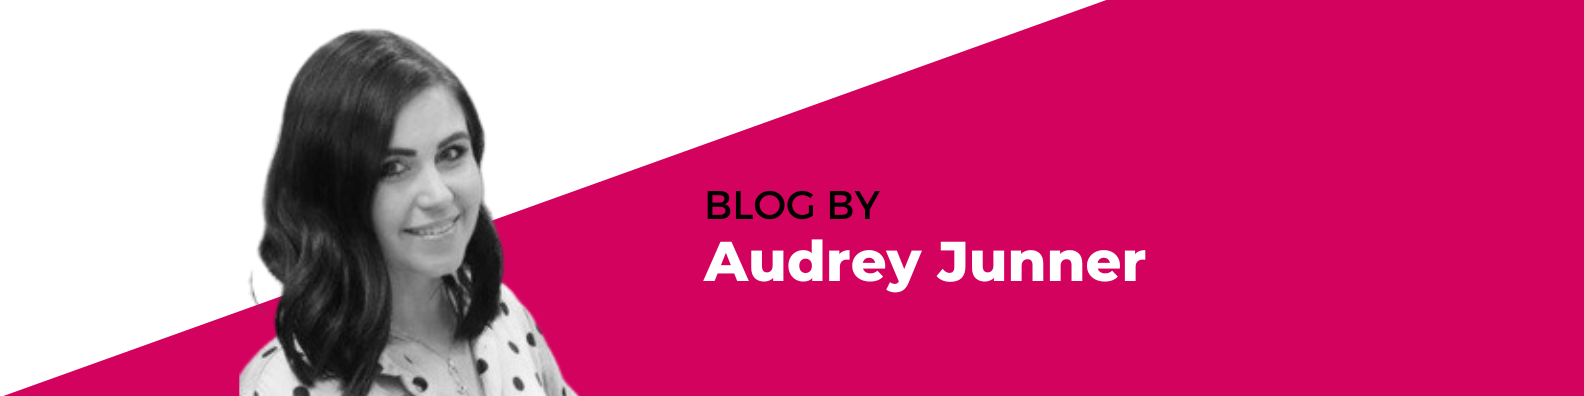 blog by audrey junner